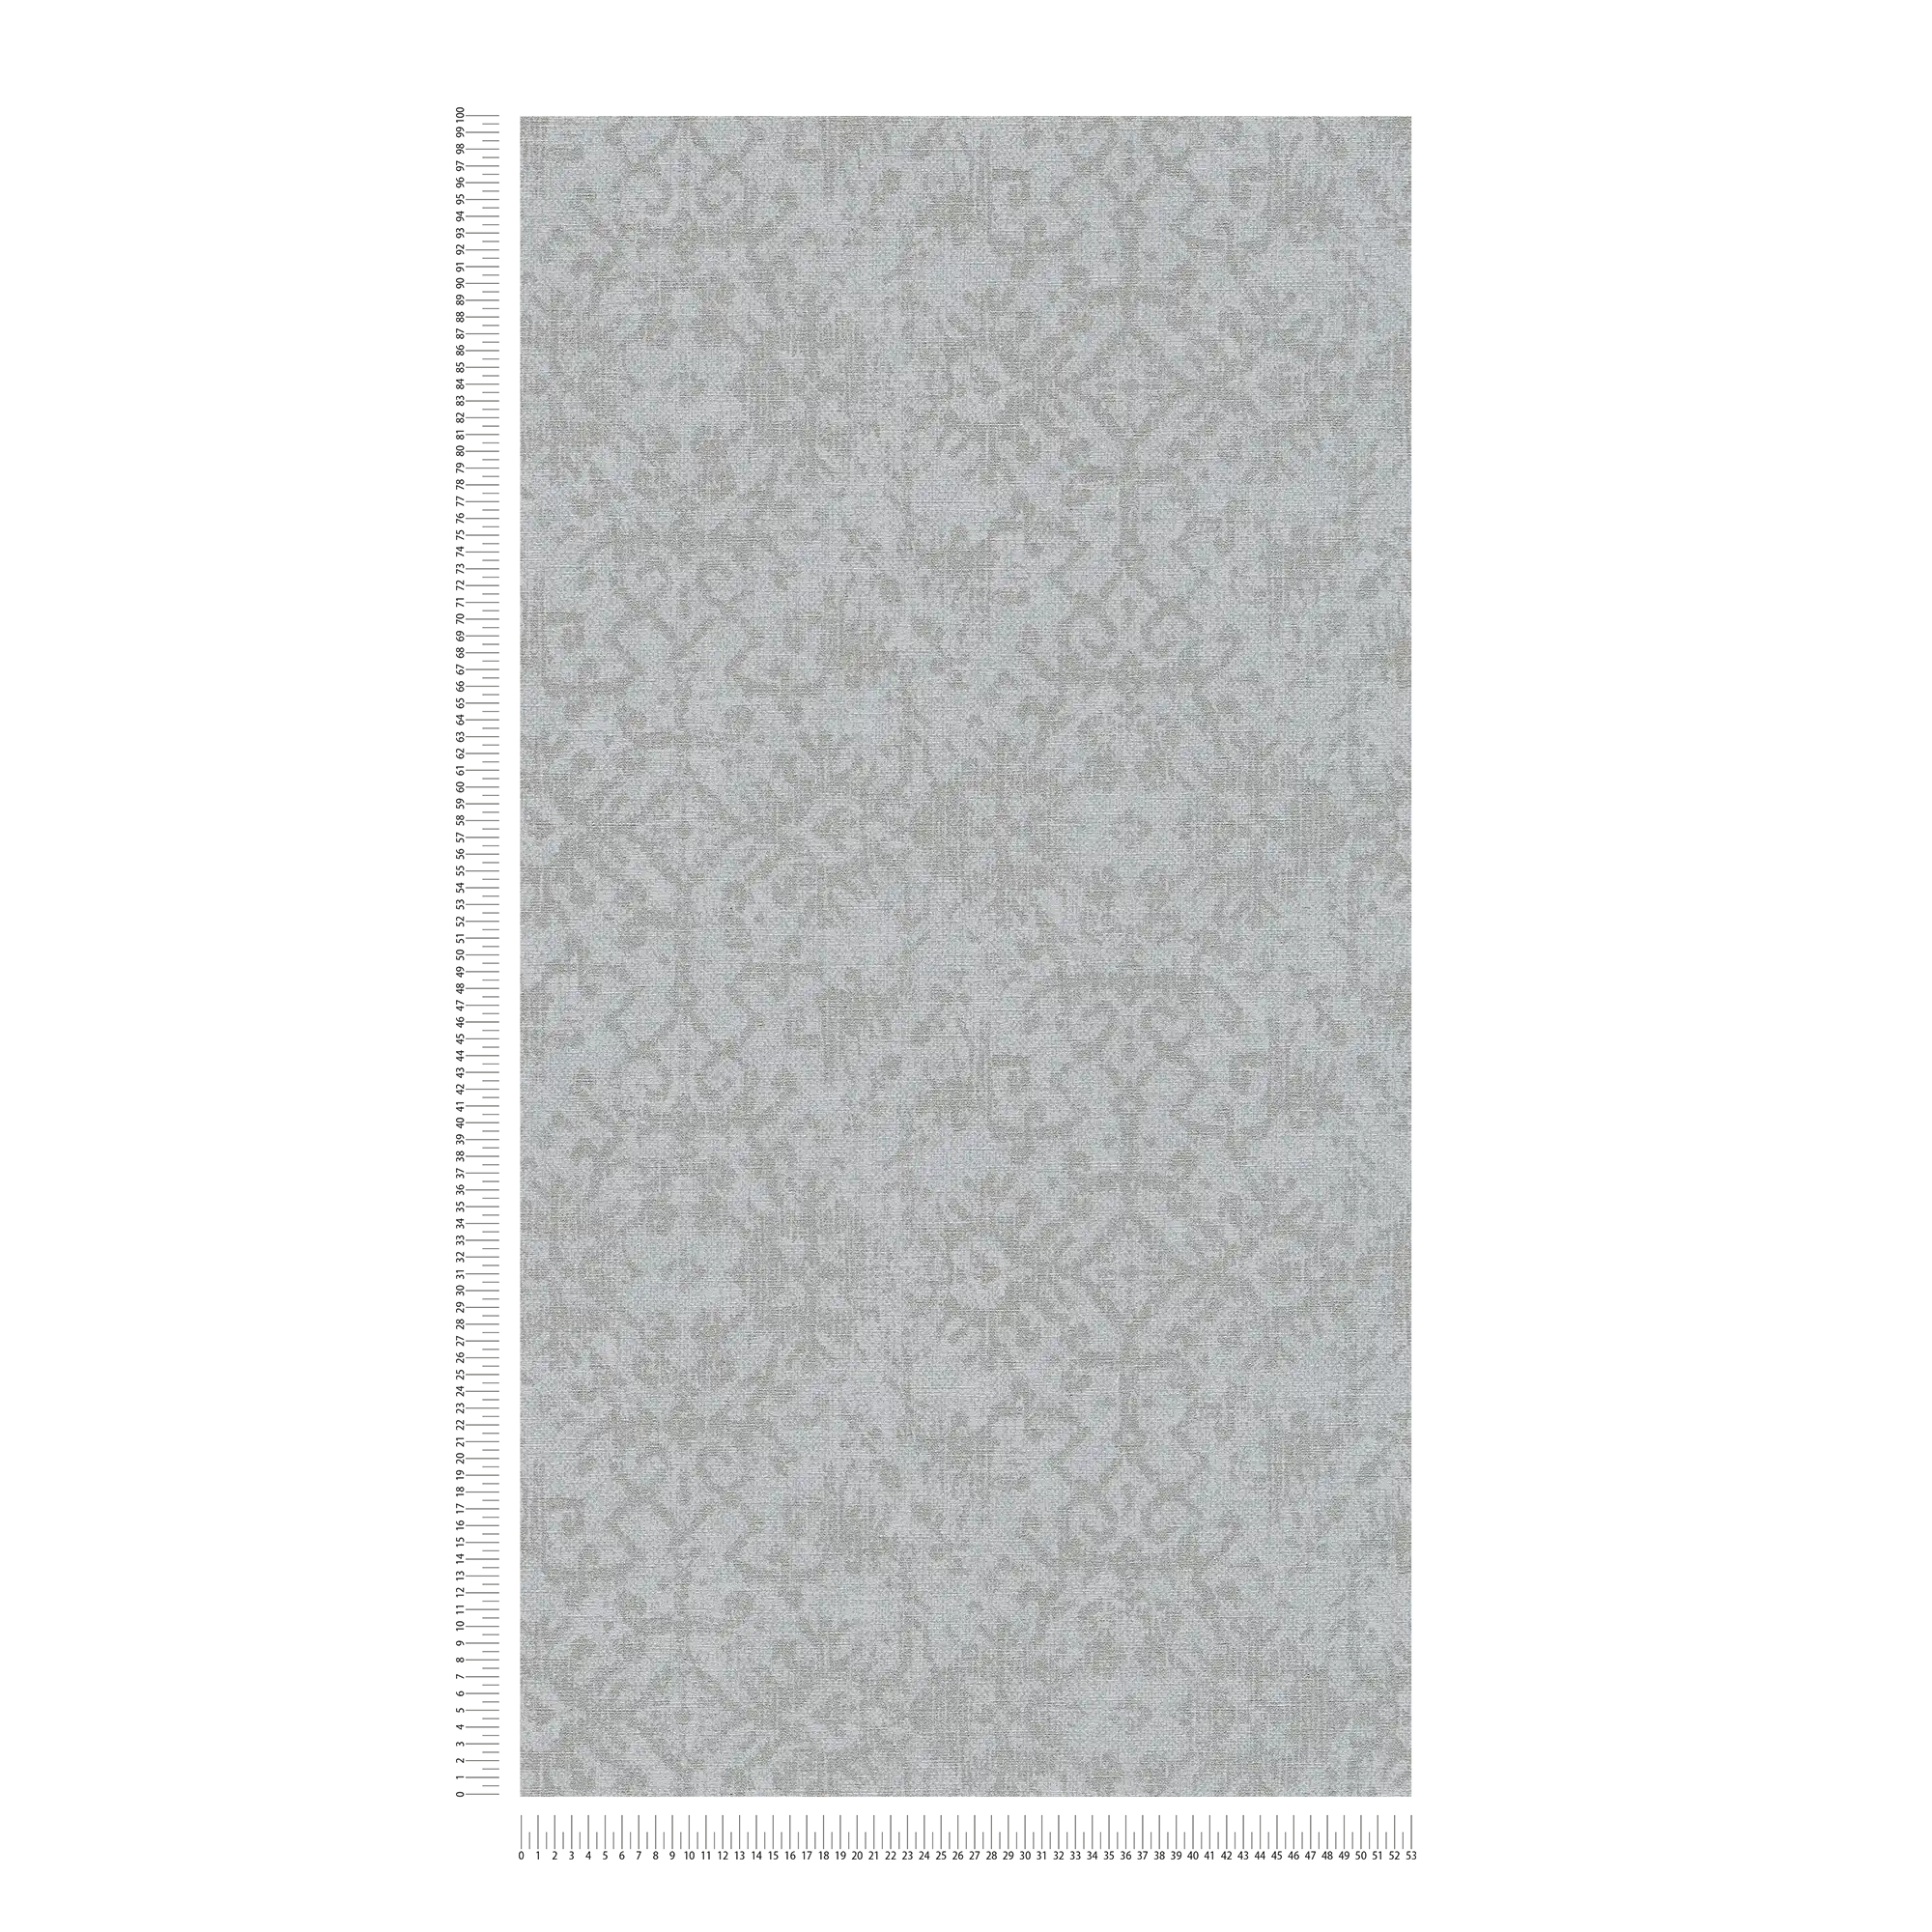             papel pintado de óptica textil con motivos étnicos - gris
        